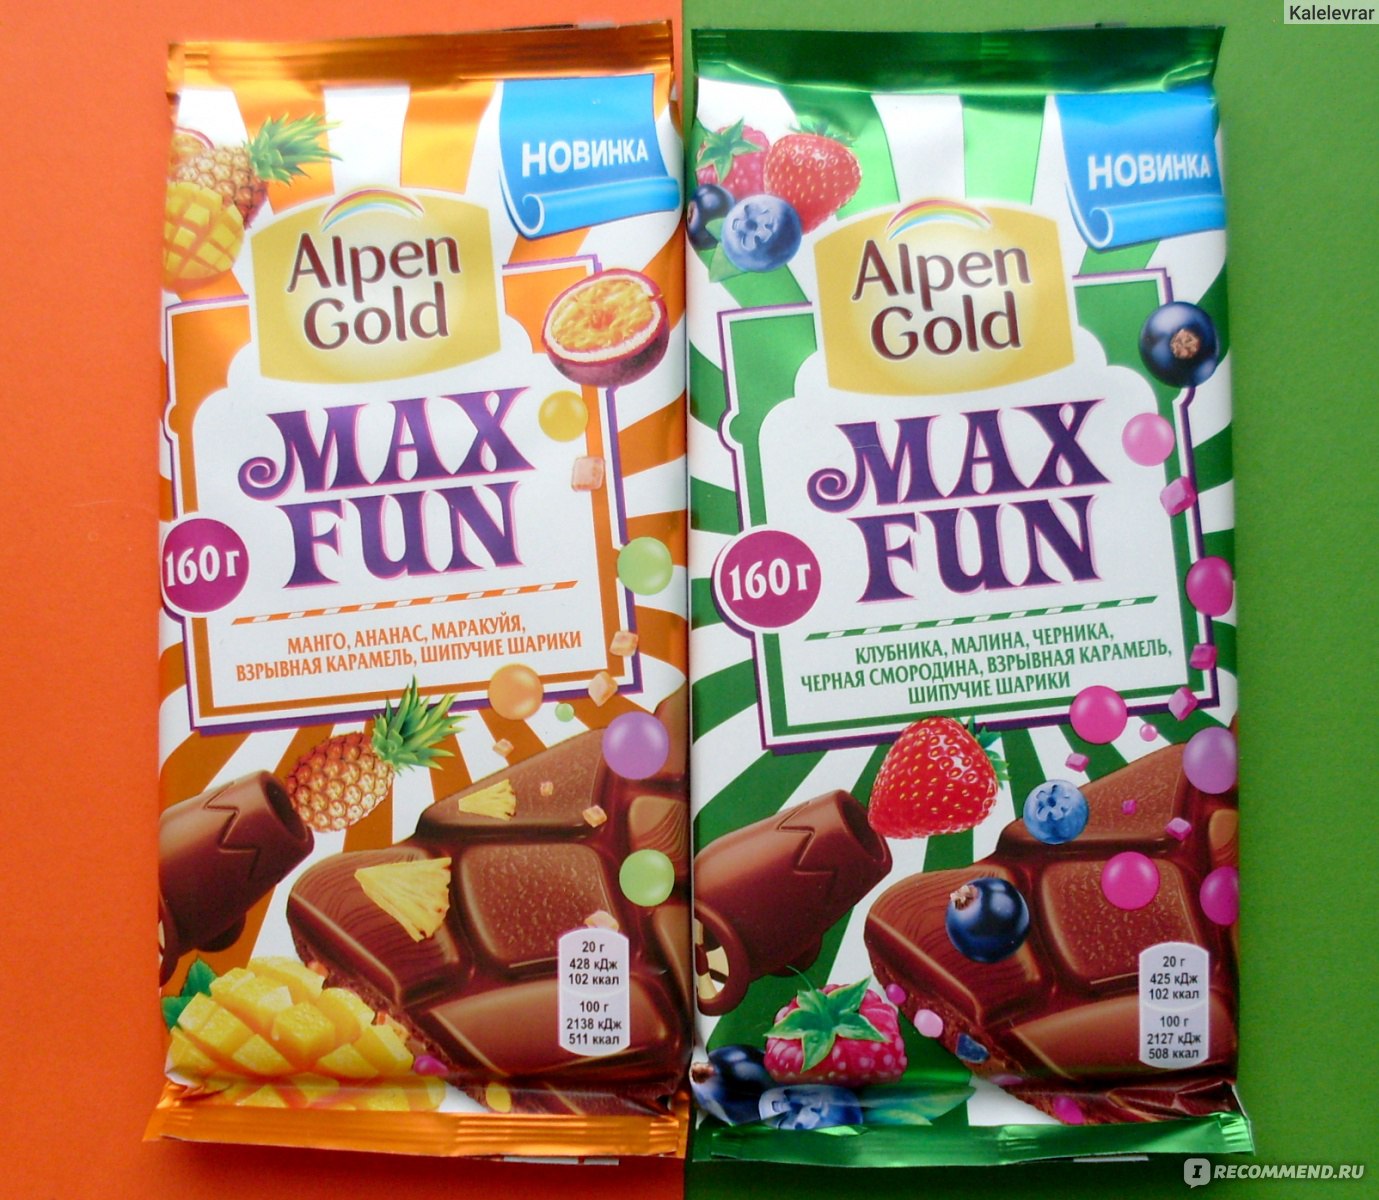 Alpen Gold Max fun вкусы